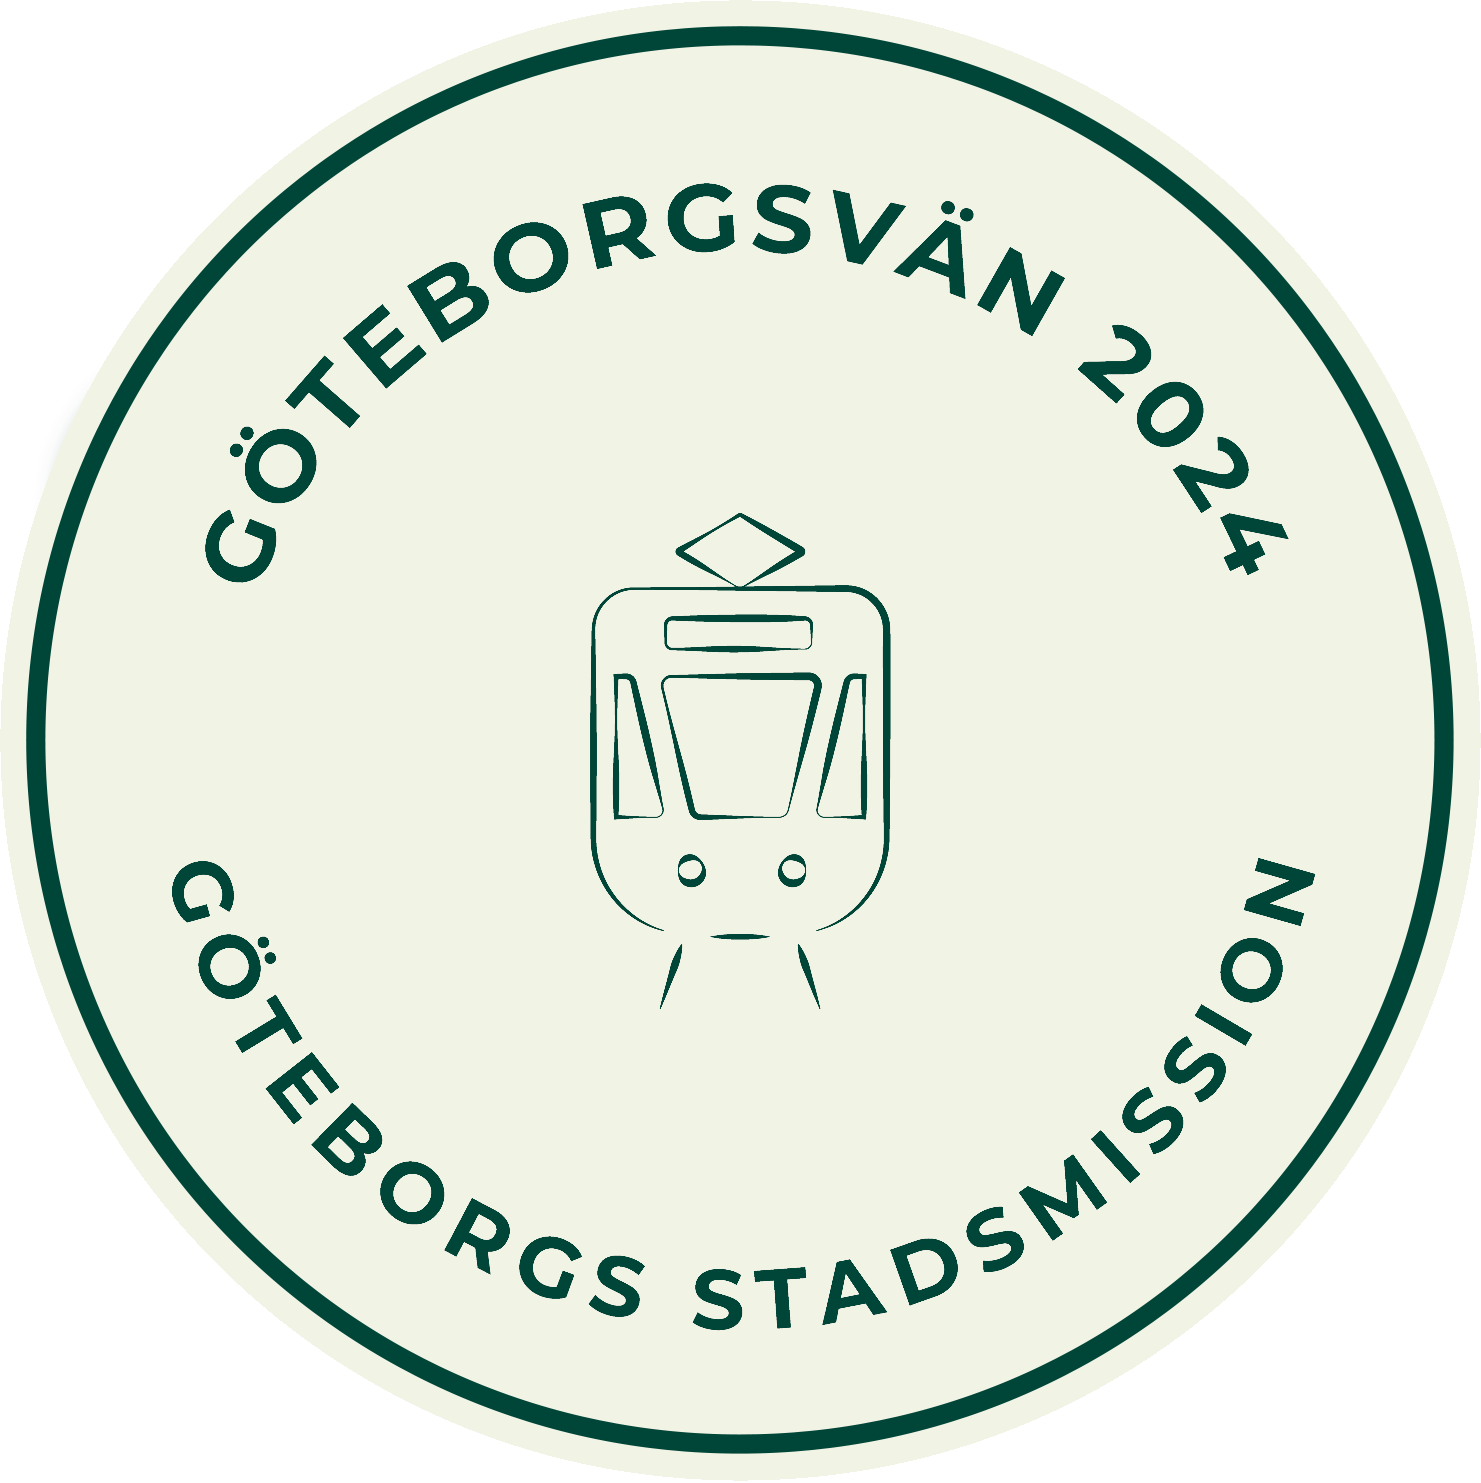 Goteborgsvan_Liten